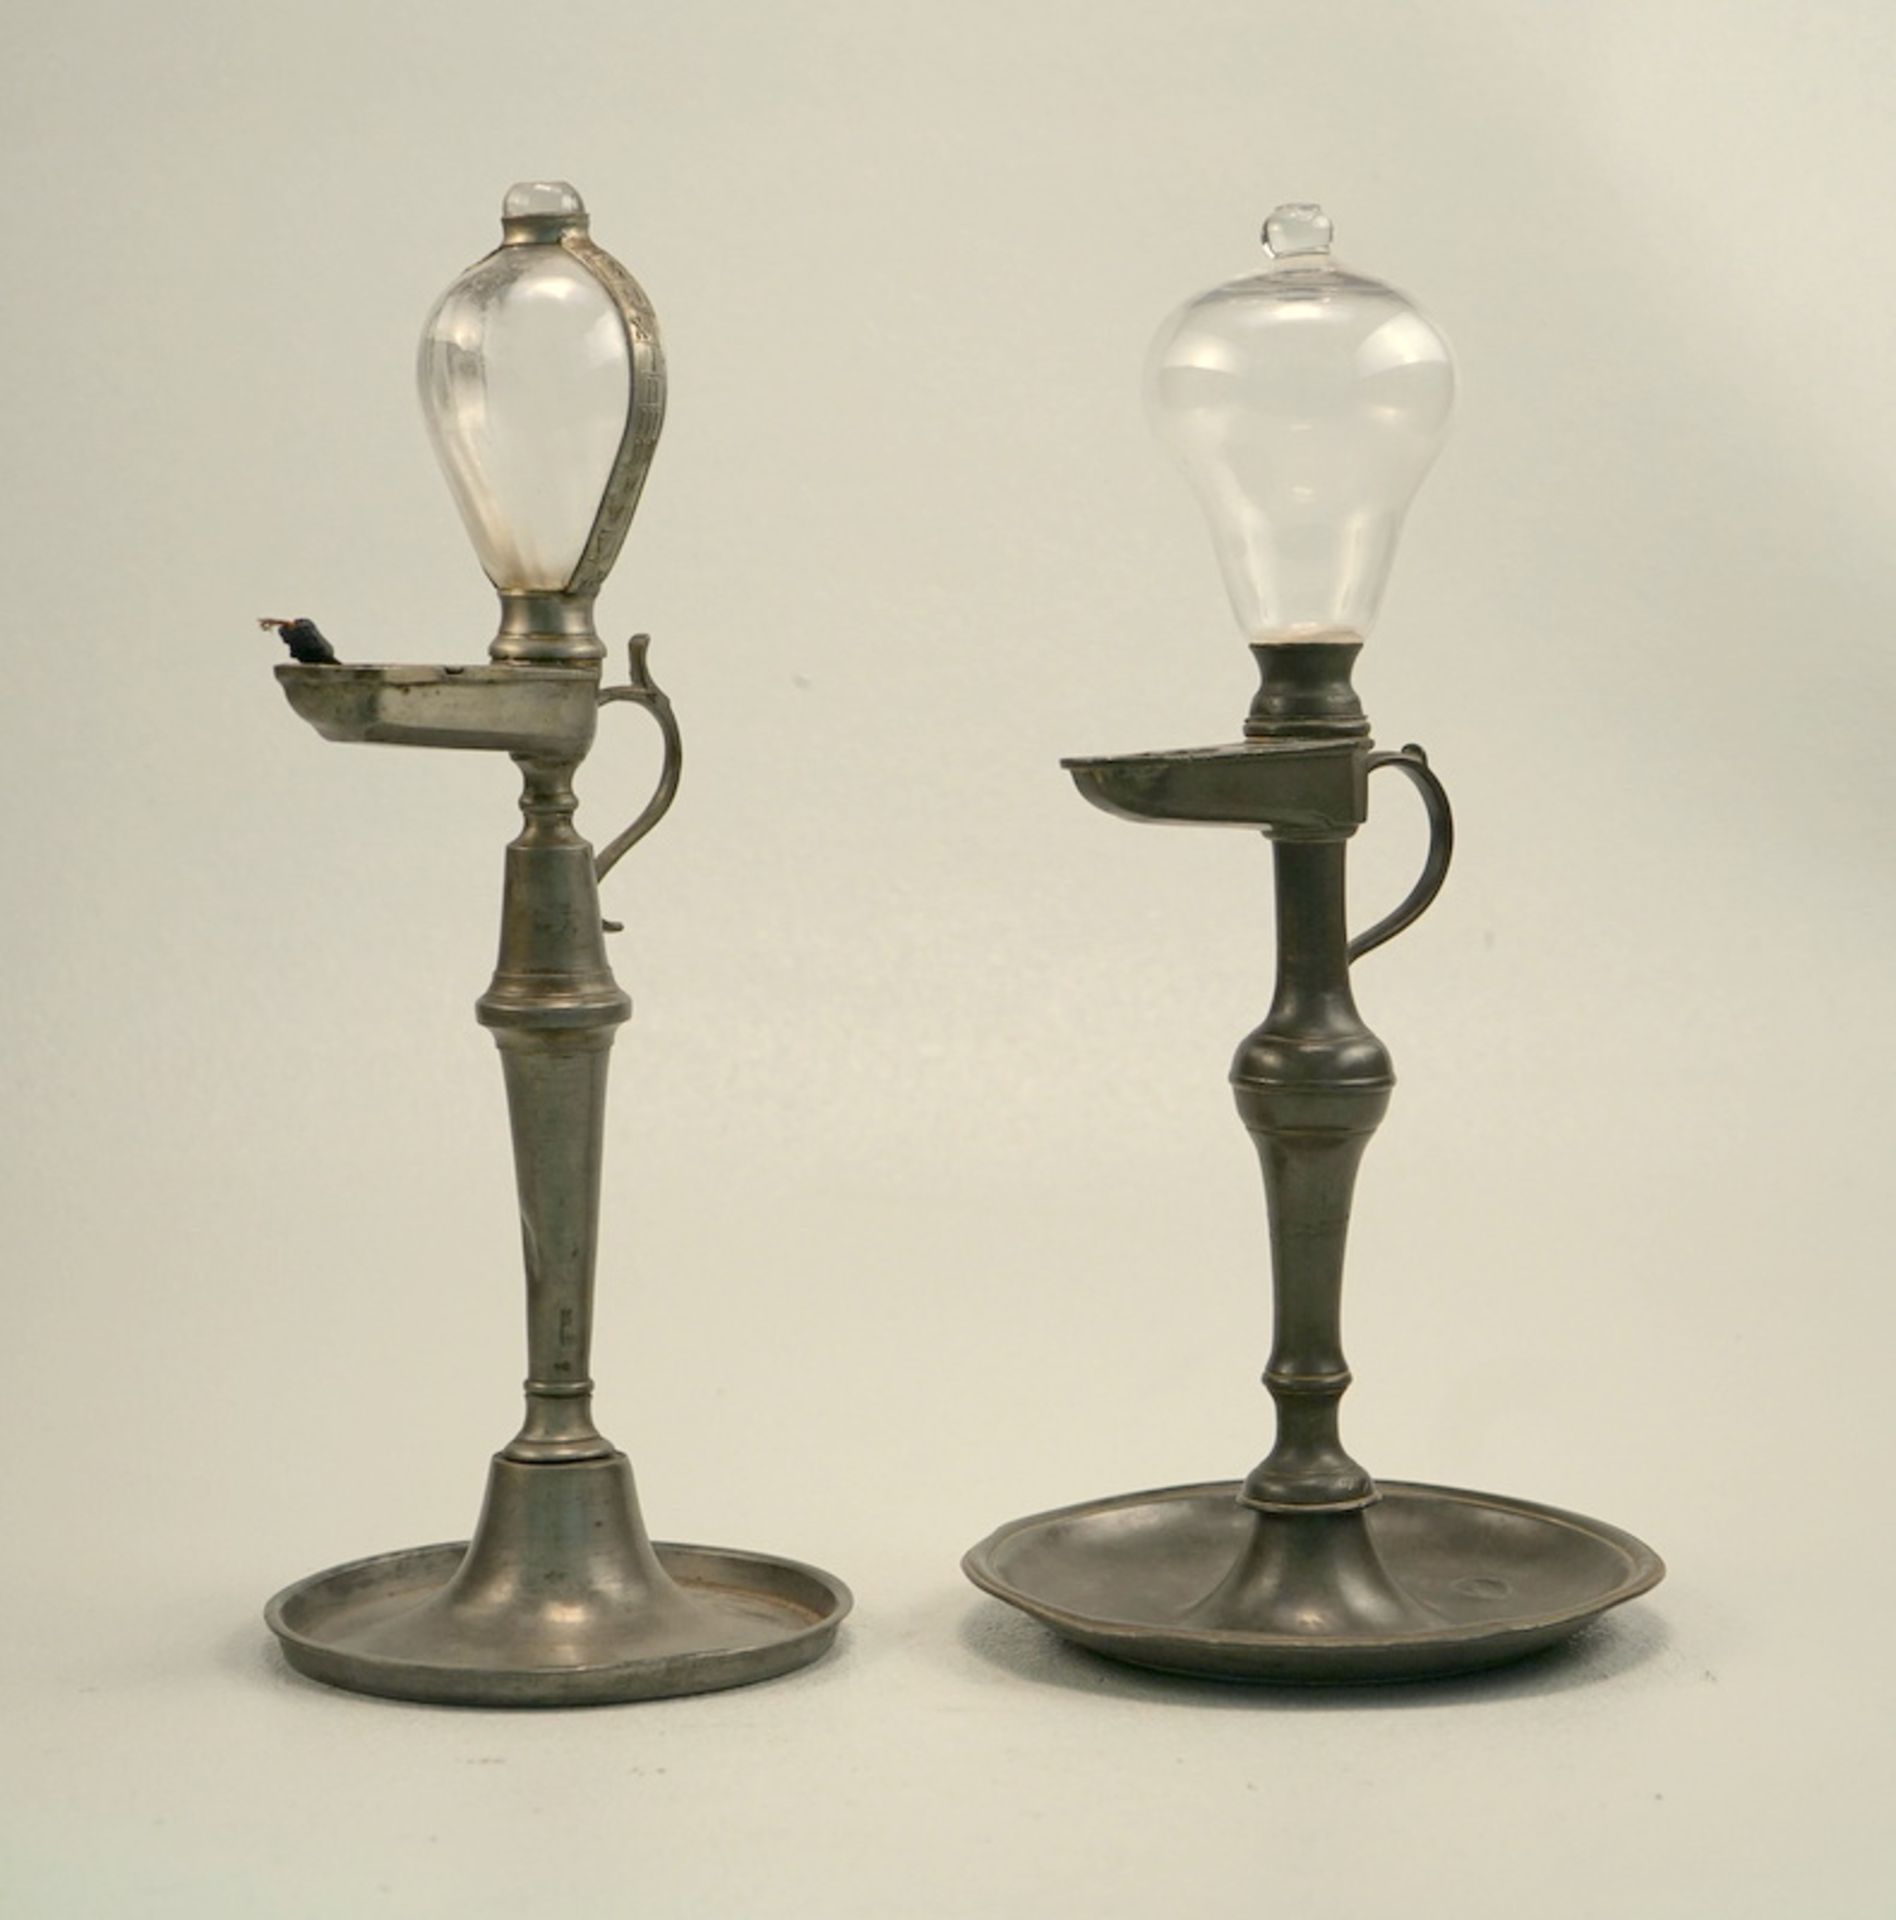 Zwei Öllampen des 19.Jhd.,Zinn und geblasenes Glas, Höhe jeweils ca. 35cm, eine Lampe am Griff